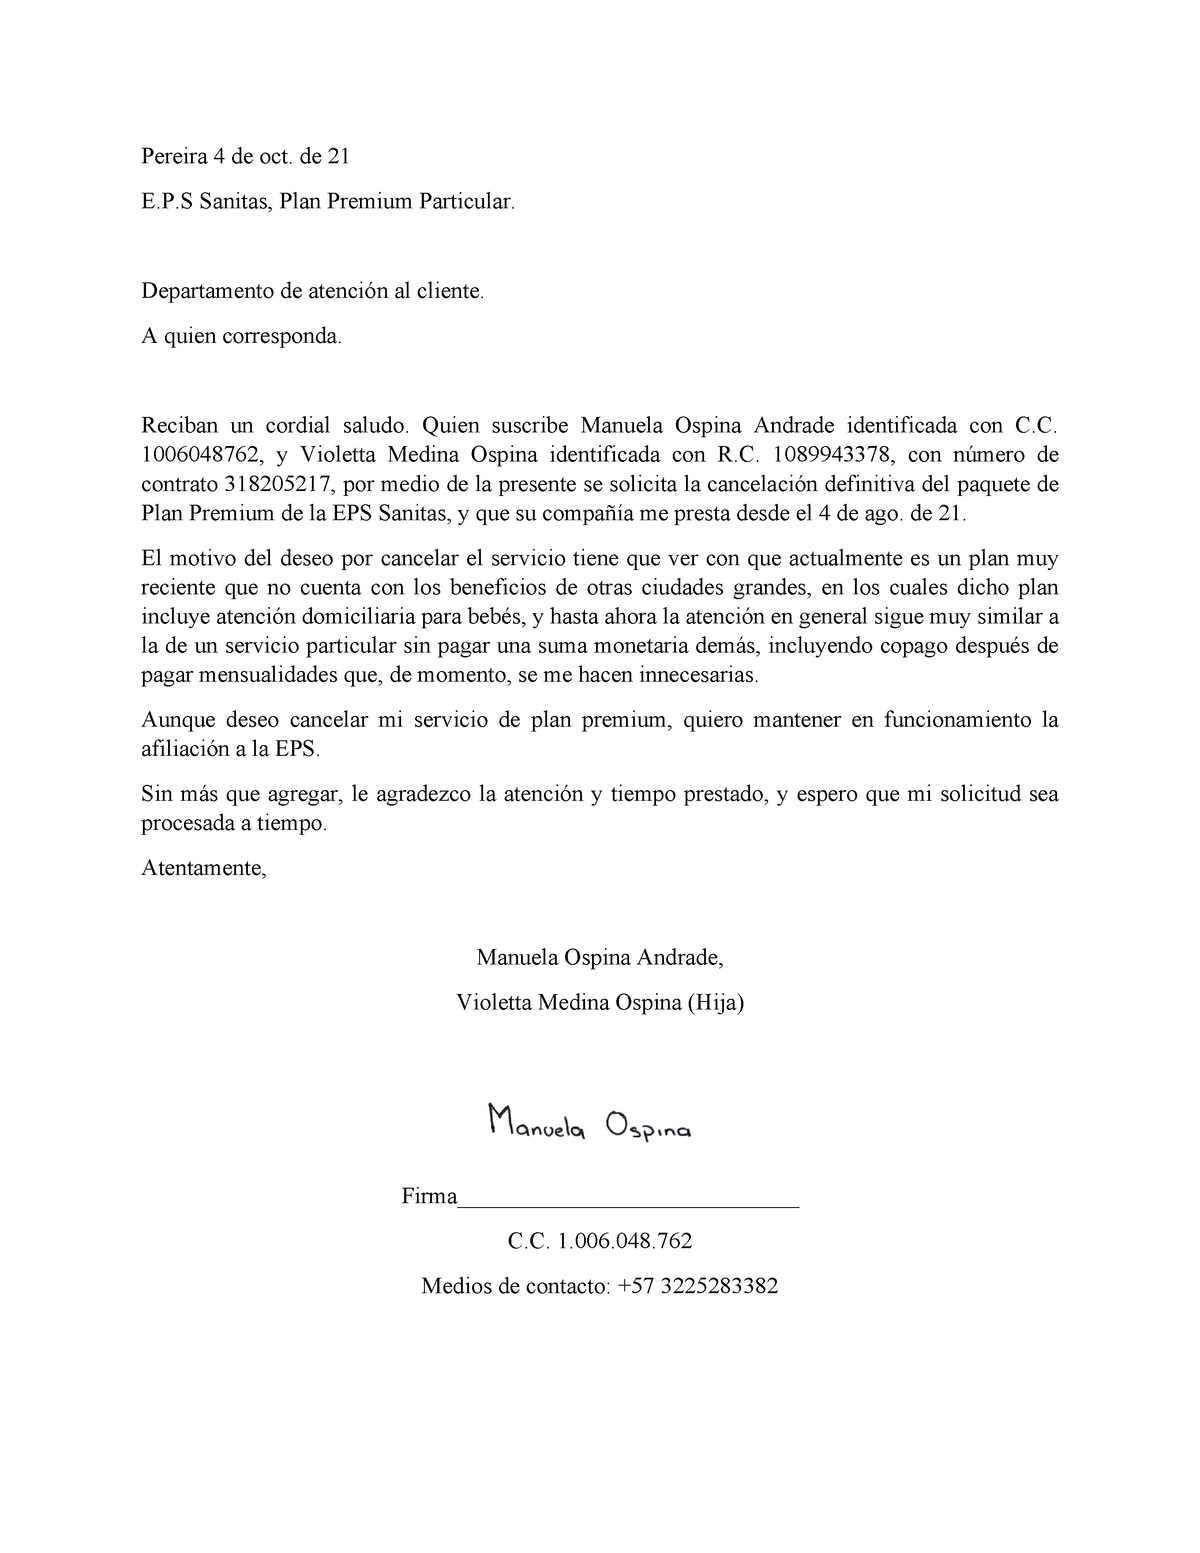 Carta de Cancelación EPS Sanitas Manuela Ospina - Pereira 4 de oct. de 21   Sanitas, Plan Premium - Studocu